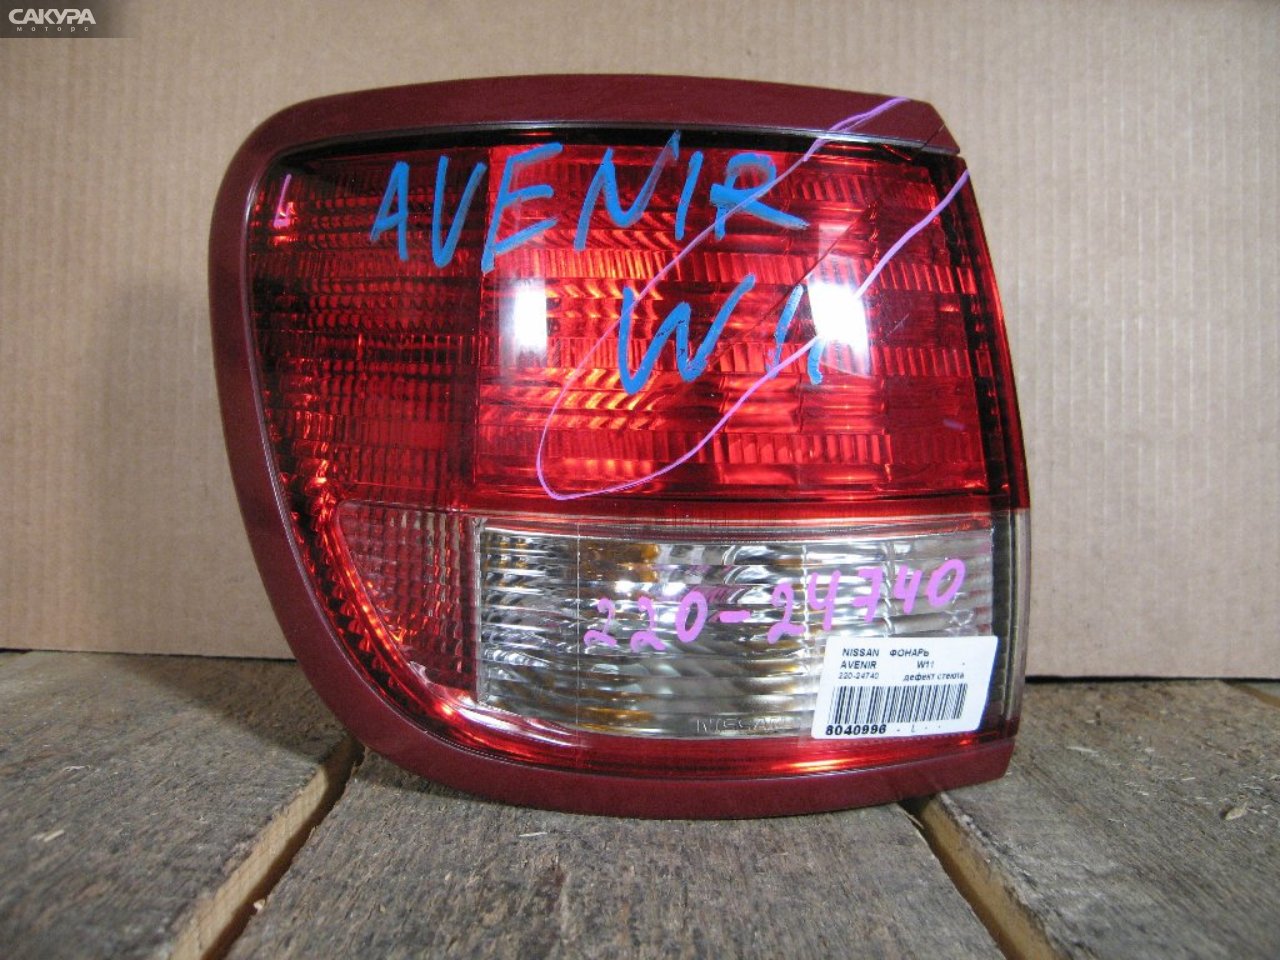 Фонарь стоп-сигнала левый Nissan Avenir W11 220-24740: купить в Сакура Абакан.